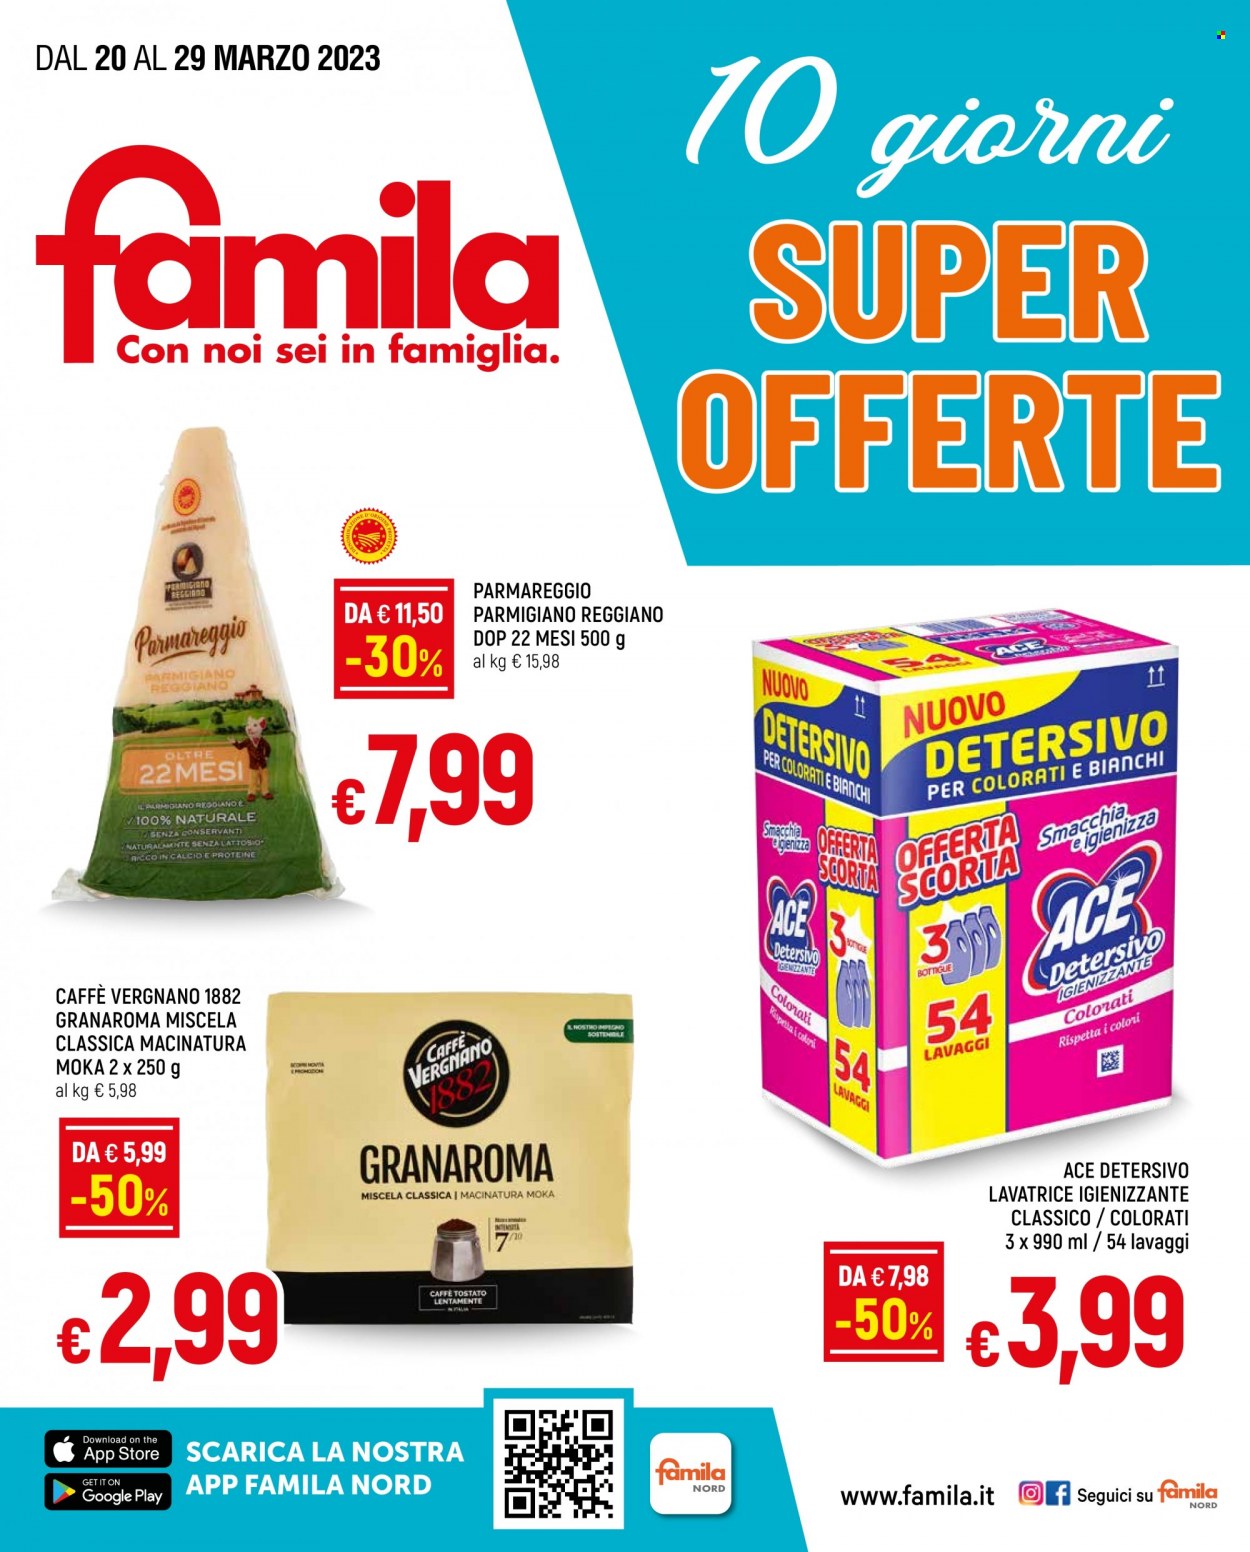 thumbnail - Volantino Famila - 20/3/2023 - 29/3/2023 - Prodotti in offerta - Parmareggio, caffè, Ace, detersivo per lavatrice. Pagina 1.